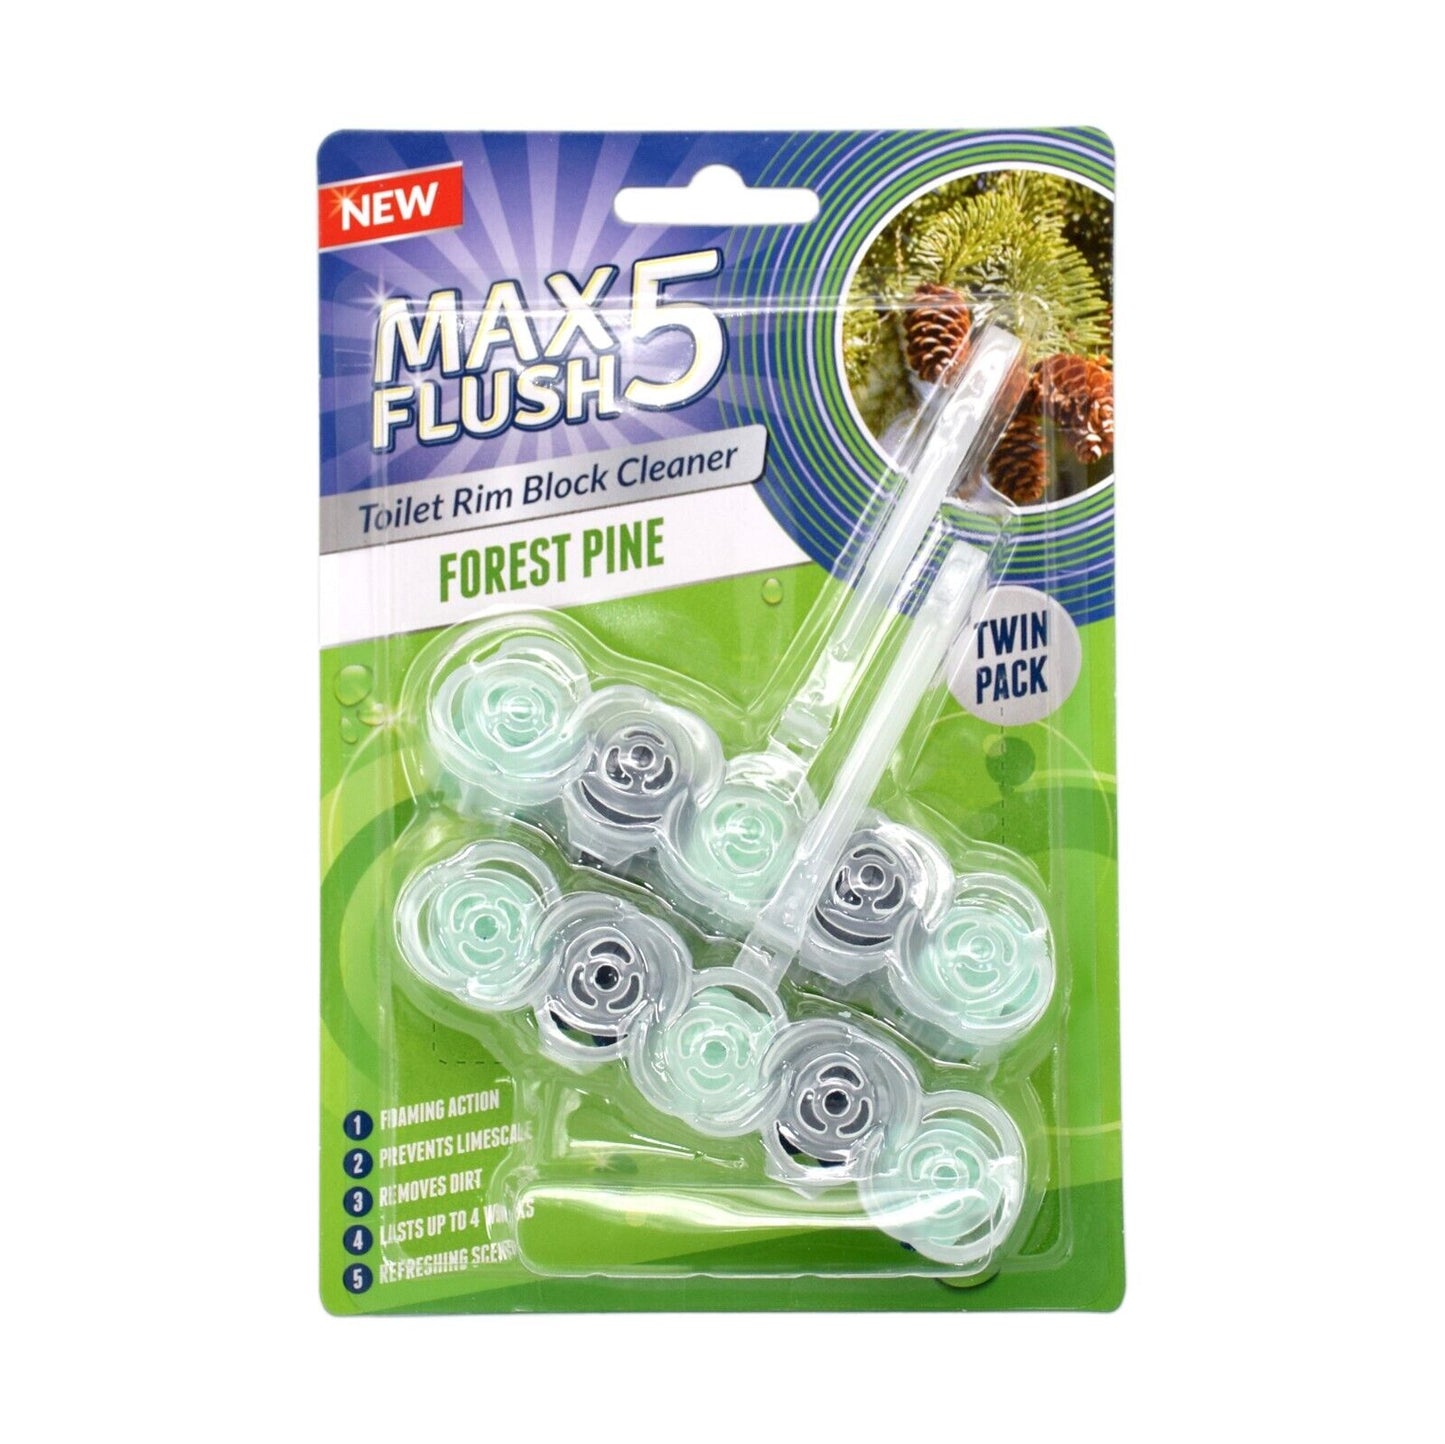 3x Max Flush 5 Toilet Rim Block Cleaner Twin Pack (3 x 2 = 6 x 45g Rim Blocks)